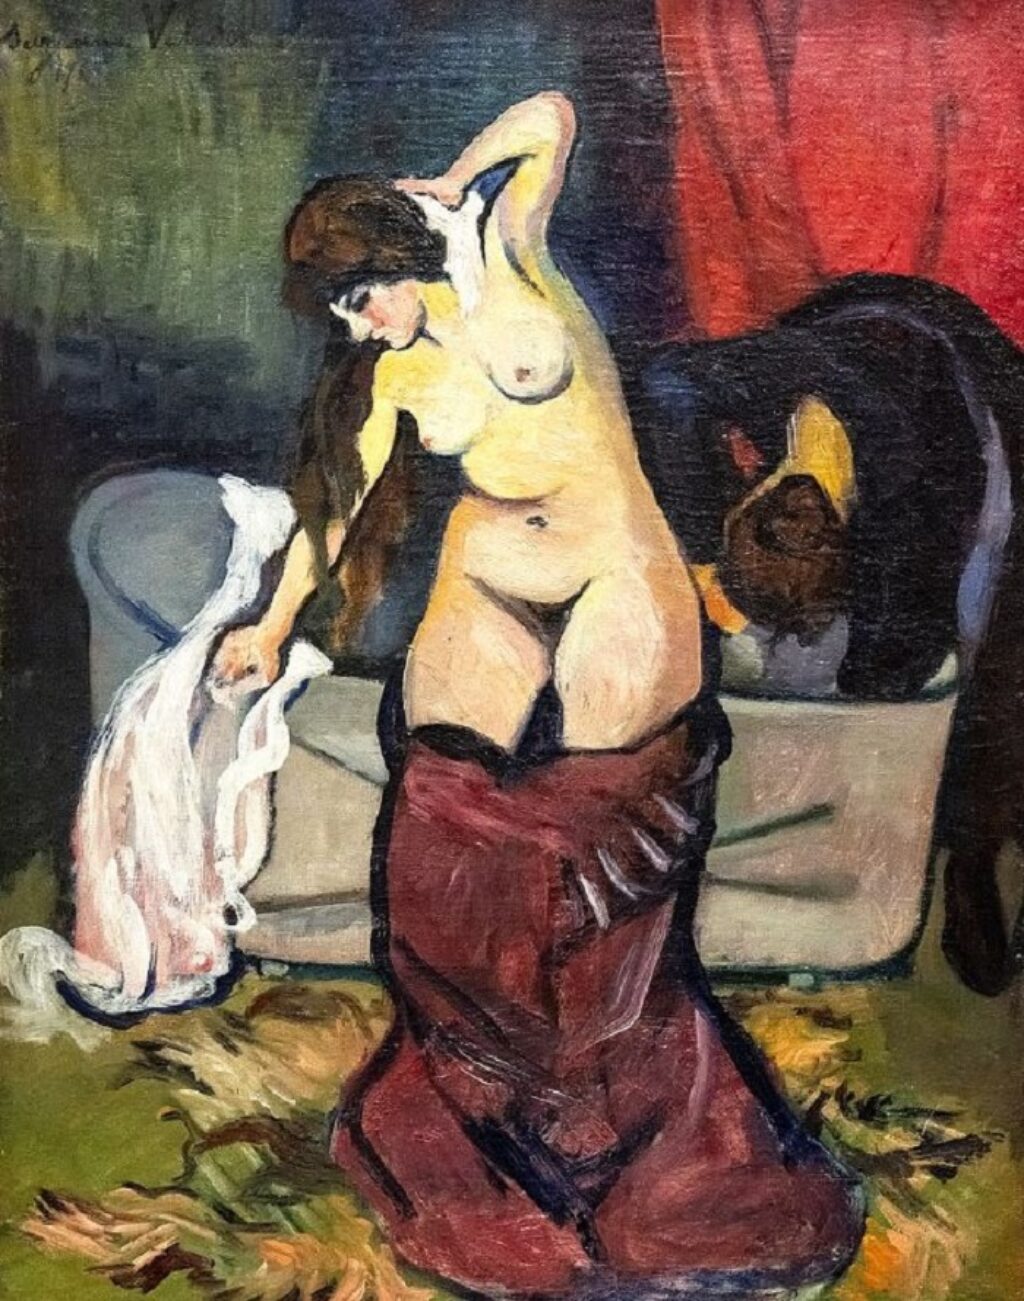 “Joven en el baño”, Suzanne Valadon, 1919.